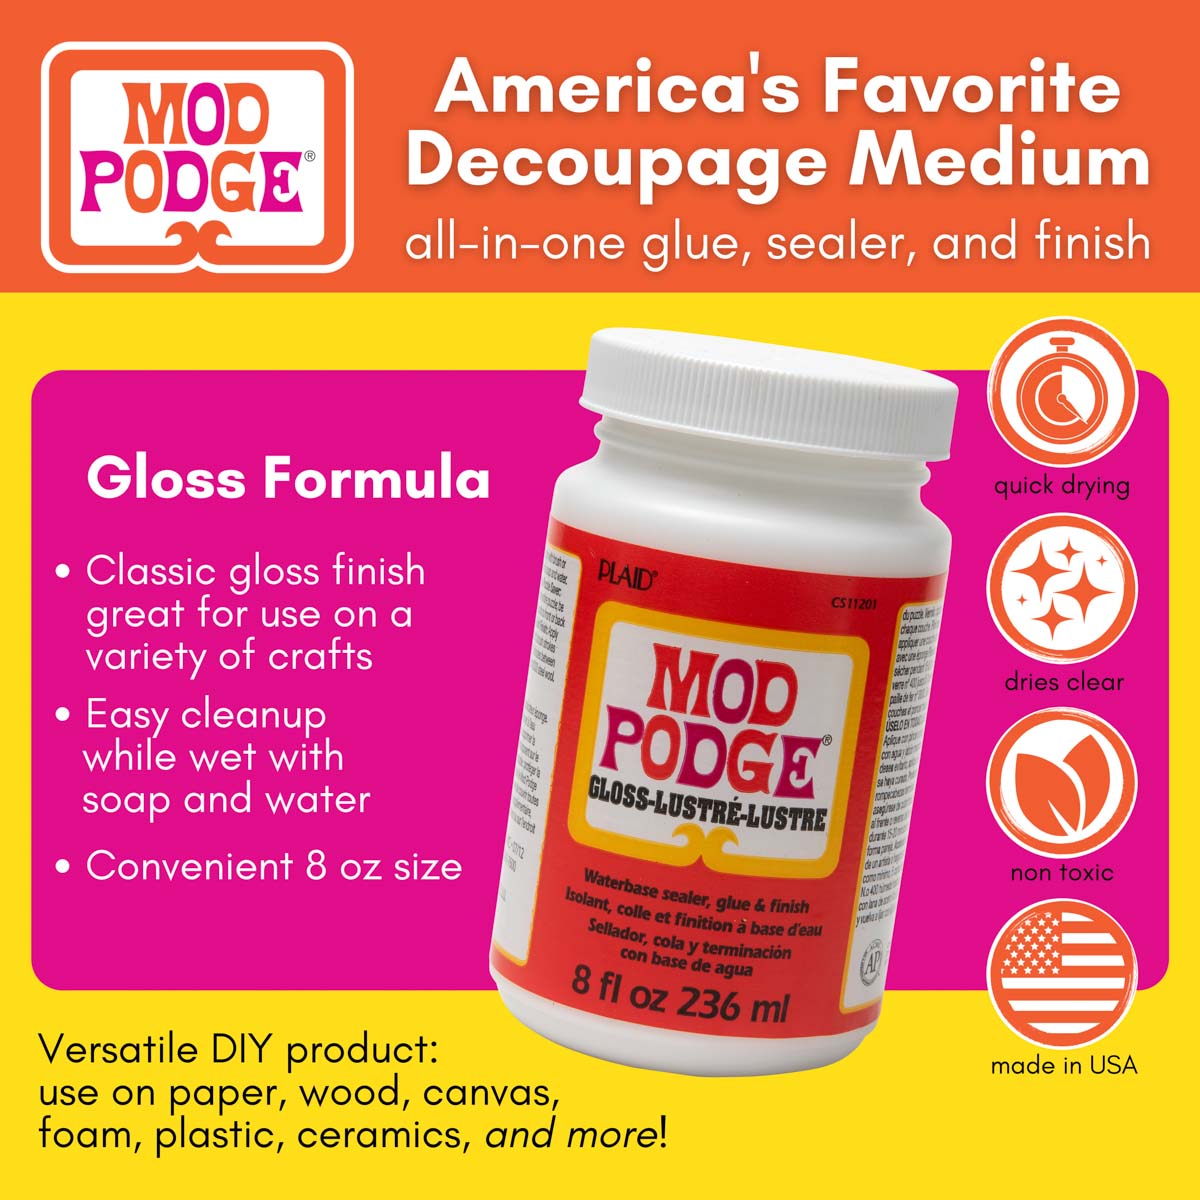 Mod Podge ® Gloss, 8 oz. - CS11201